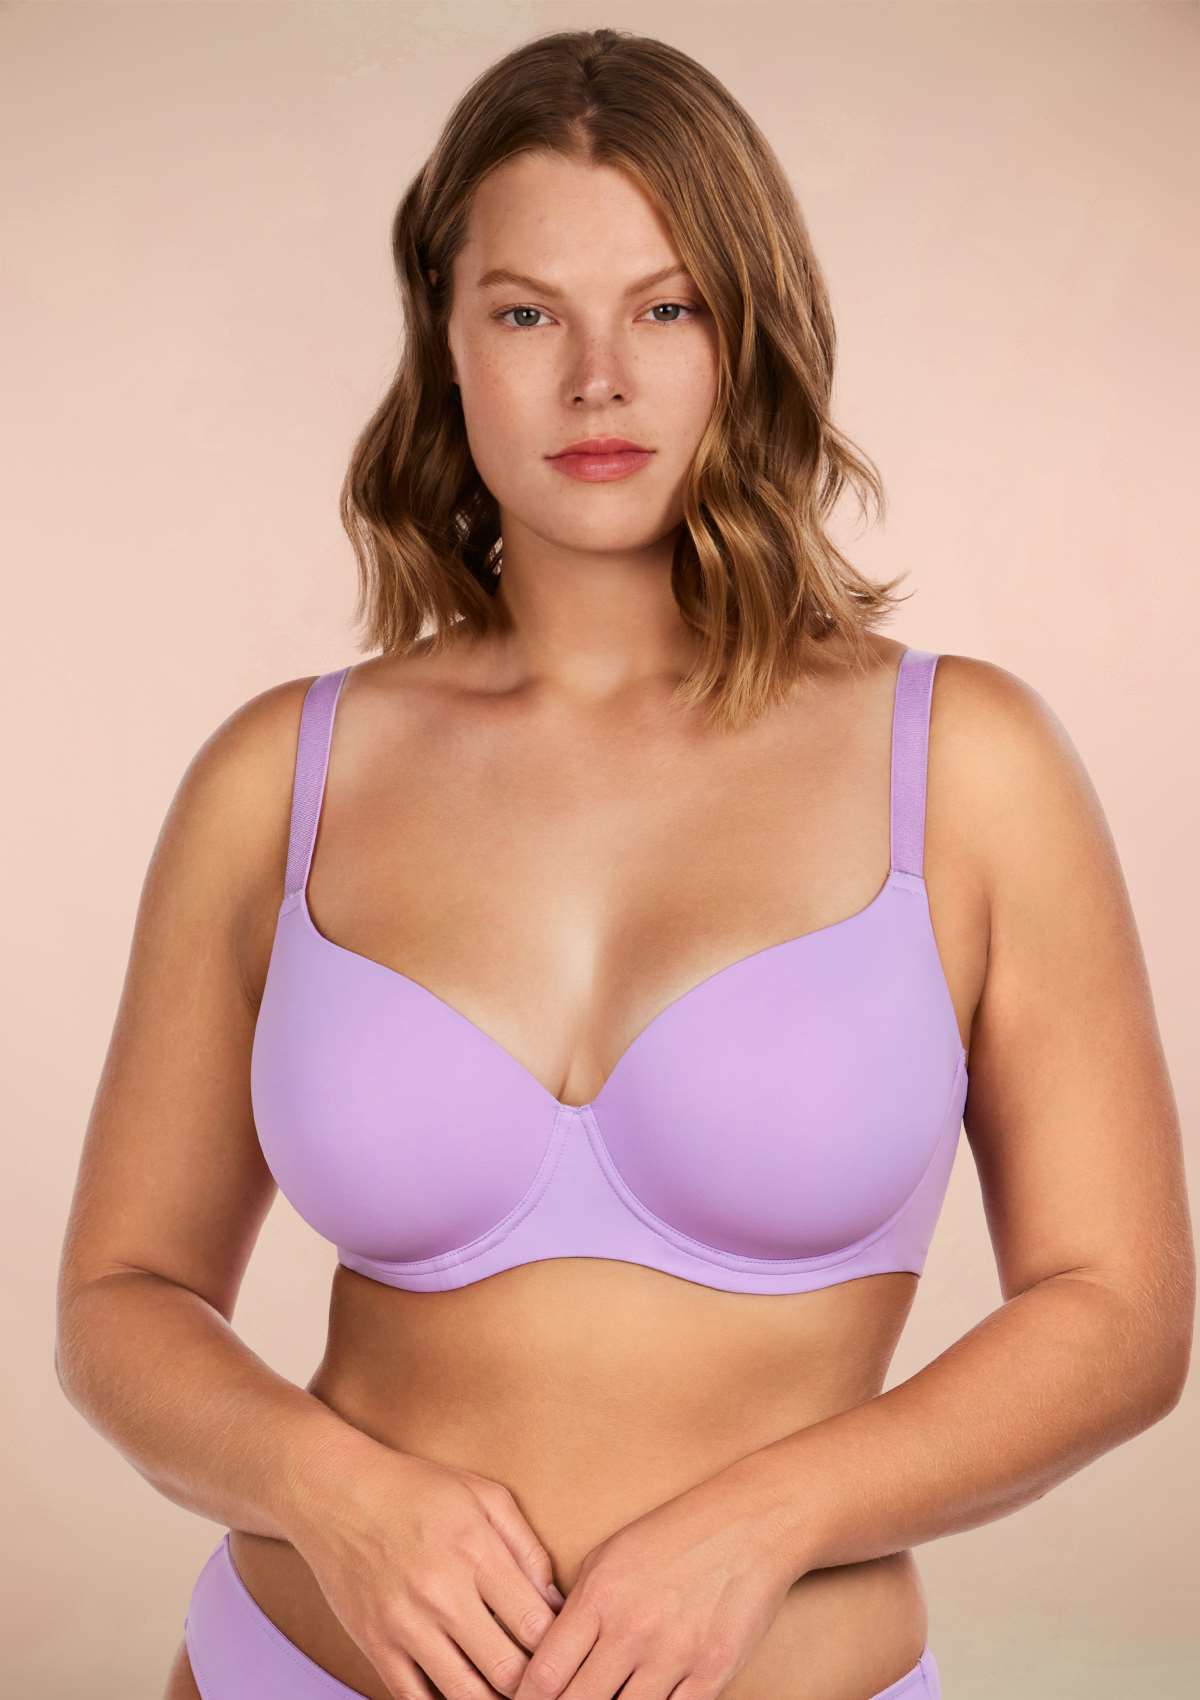 HSIA Gemma Smooth Lightly Padded T-shirt Bra For Heavy Breasts - Purple / 36 / DDD/F